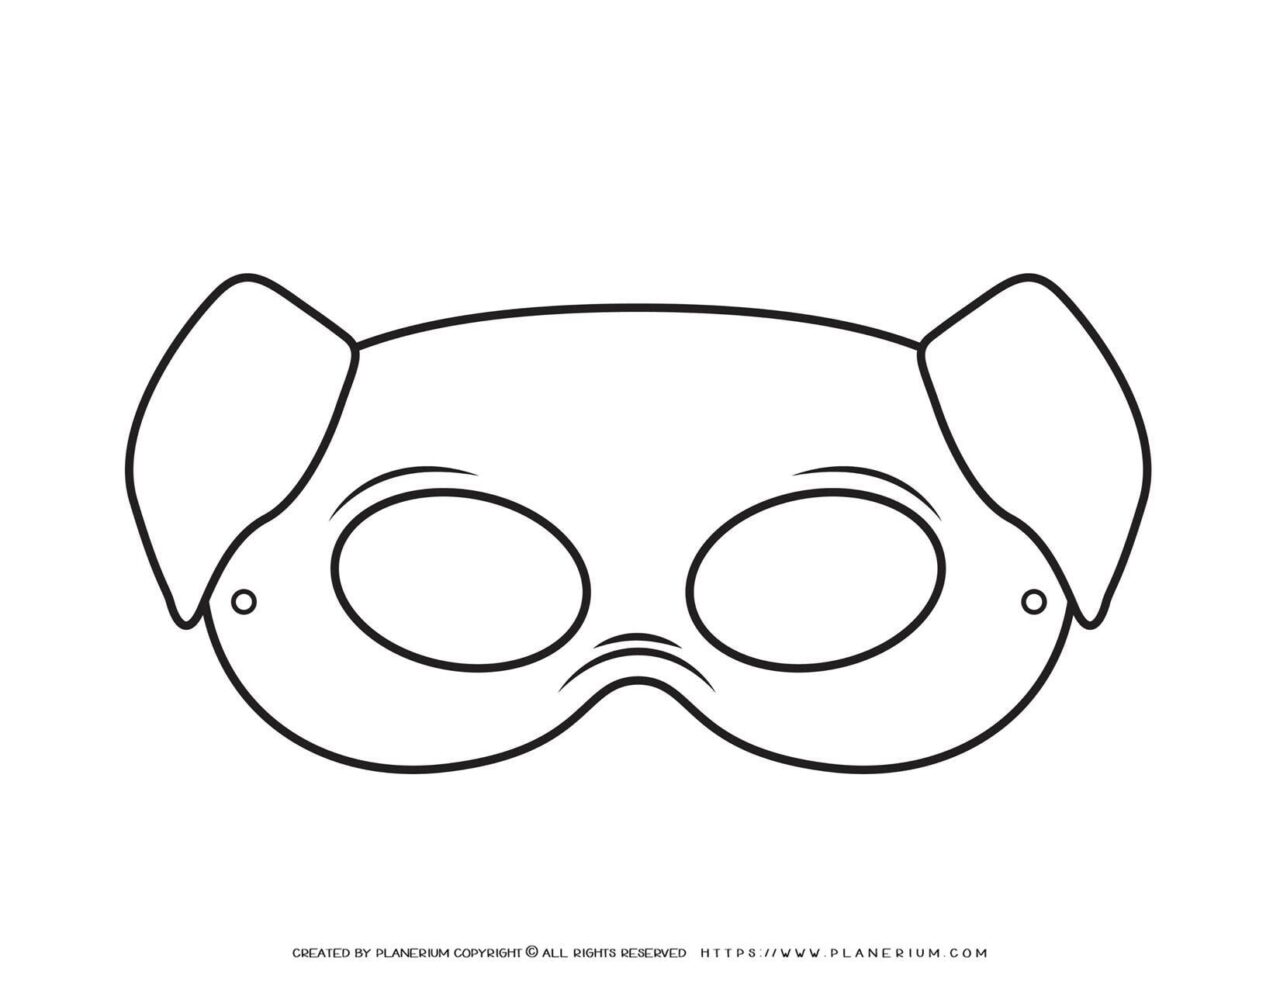 Animal Masks - Pig Eye Mask | Planerium